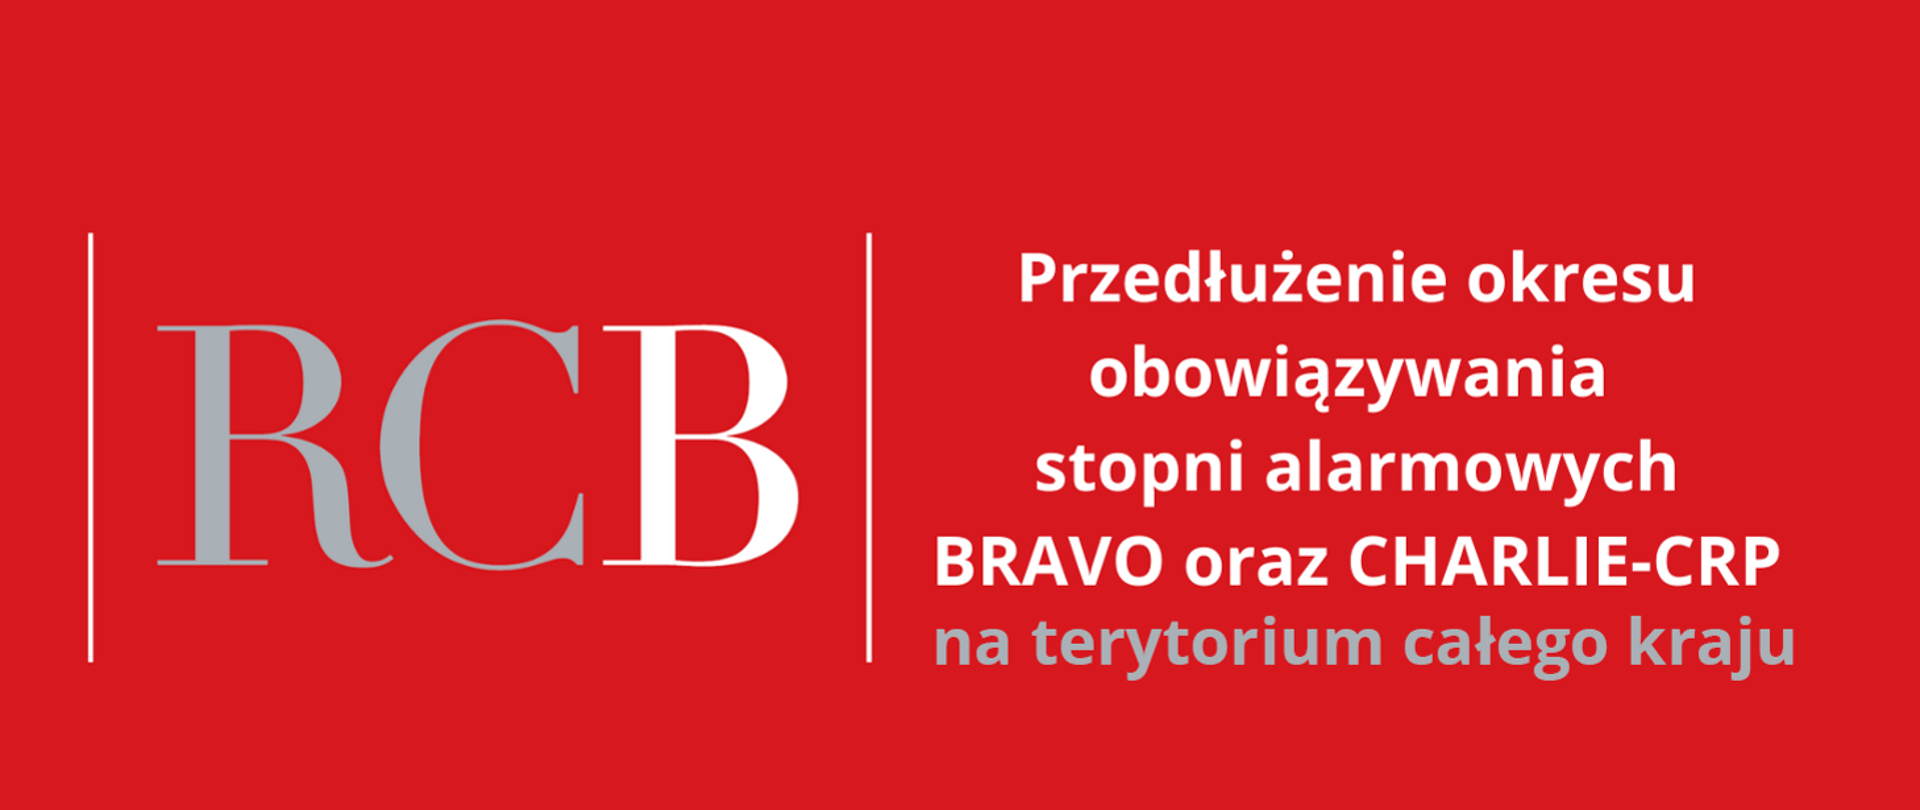 na czerwonym tle napisy: RCB (po lewej stronie) i przedłużenie obowiązywania stopni alarmowych BRAVO oraz CHARLIE-CRP na terytorium całego kraju